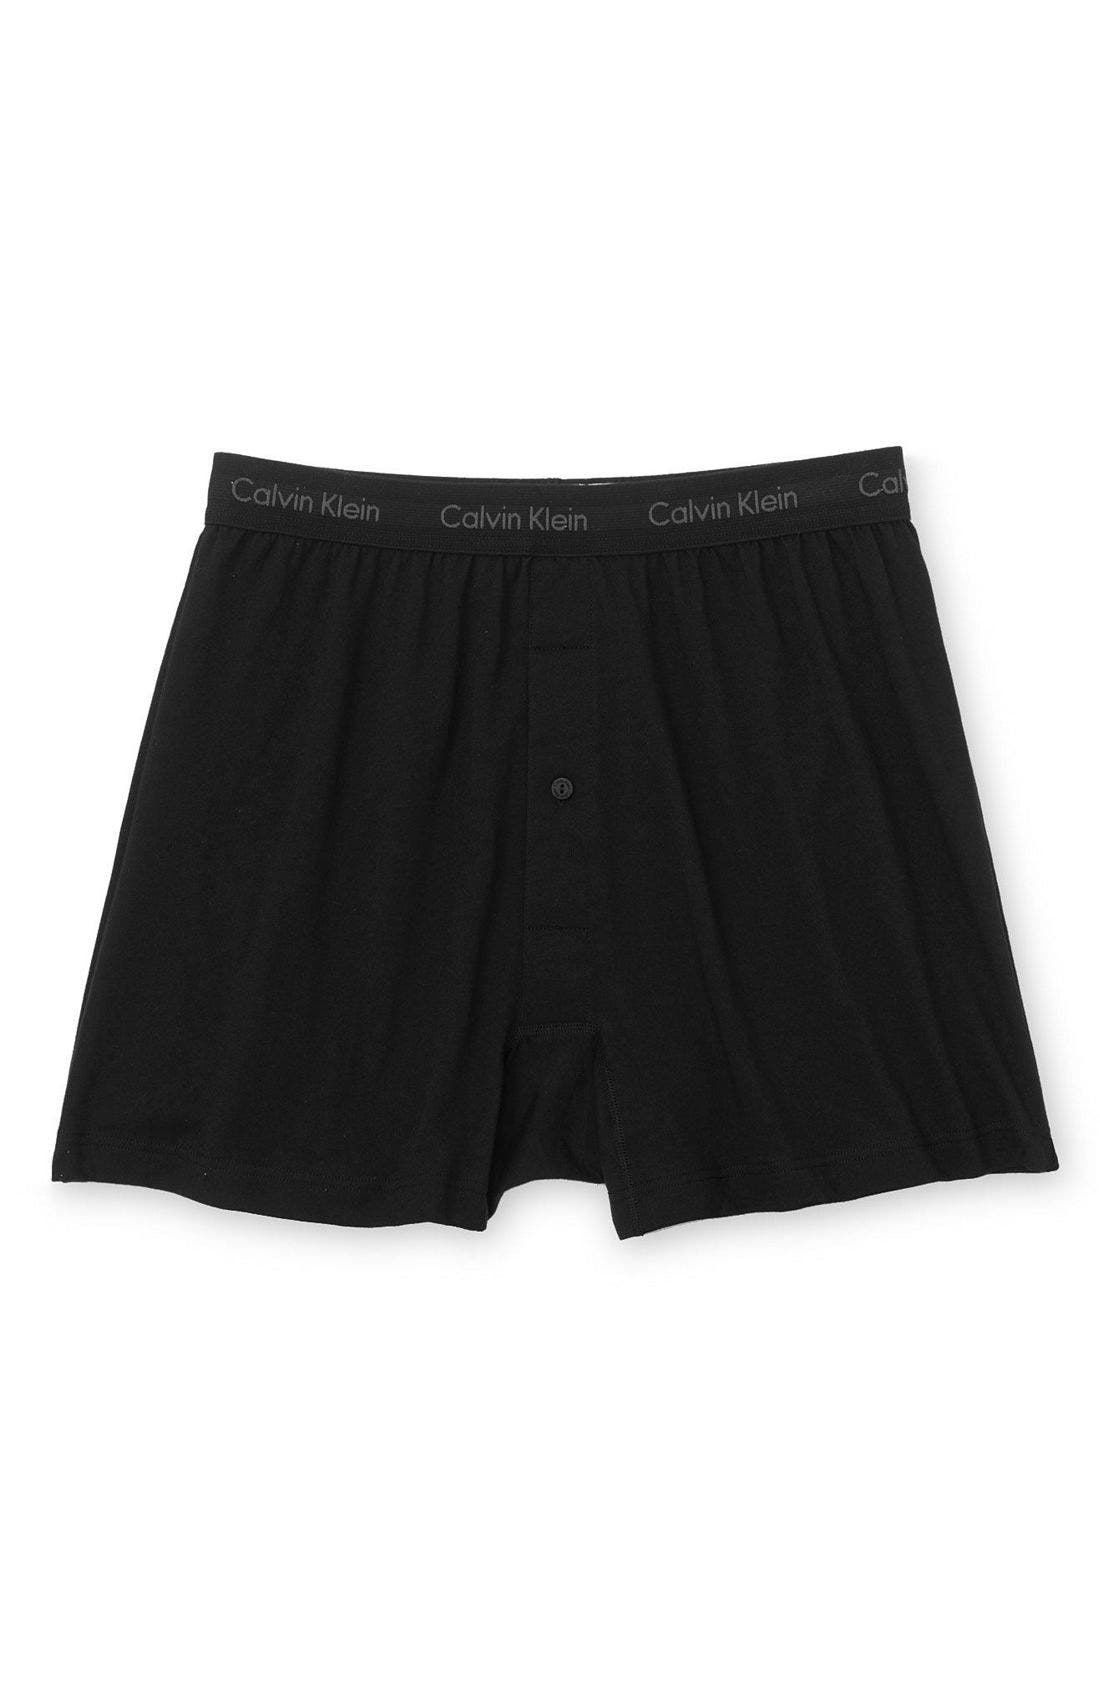 calvin klein loose boxer shorts